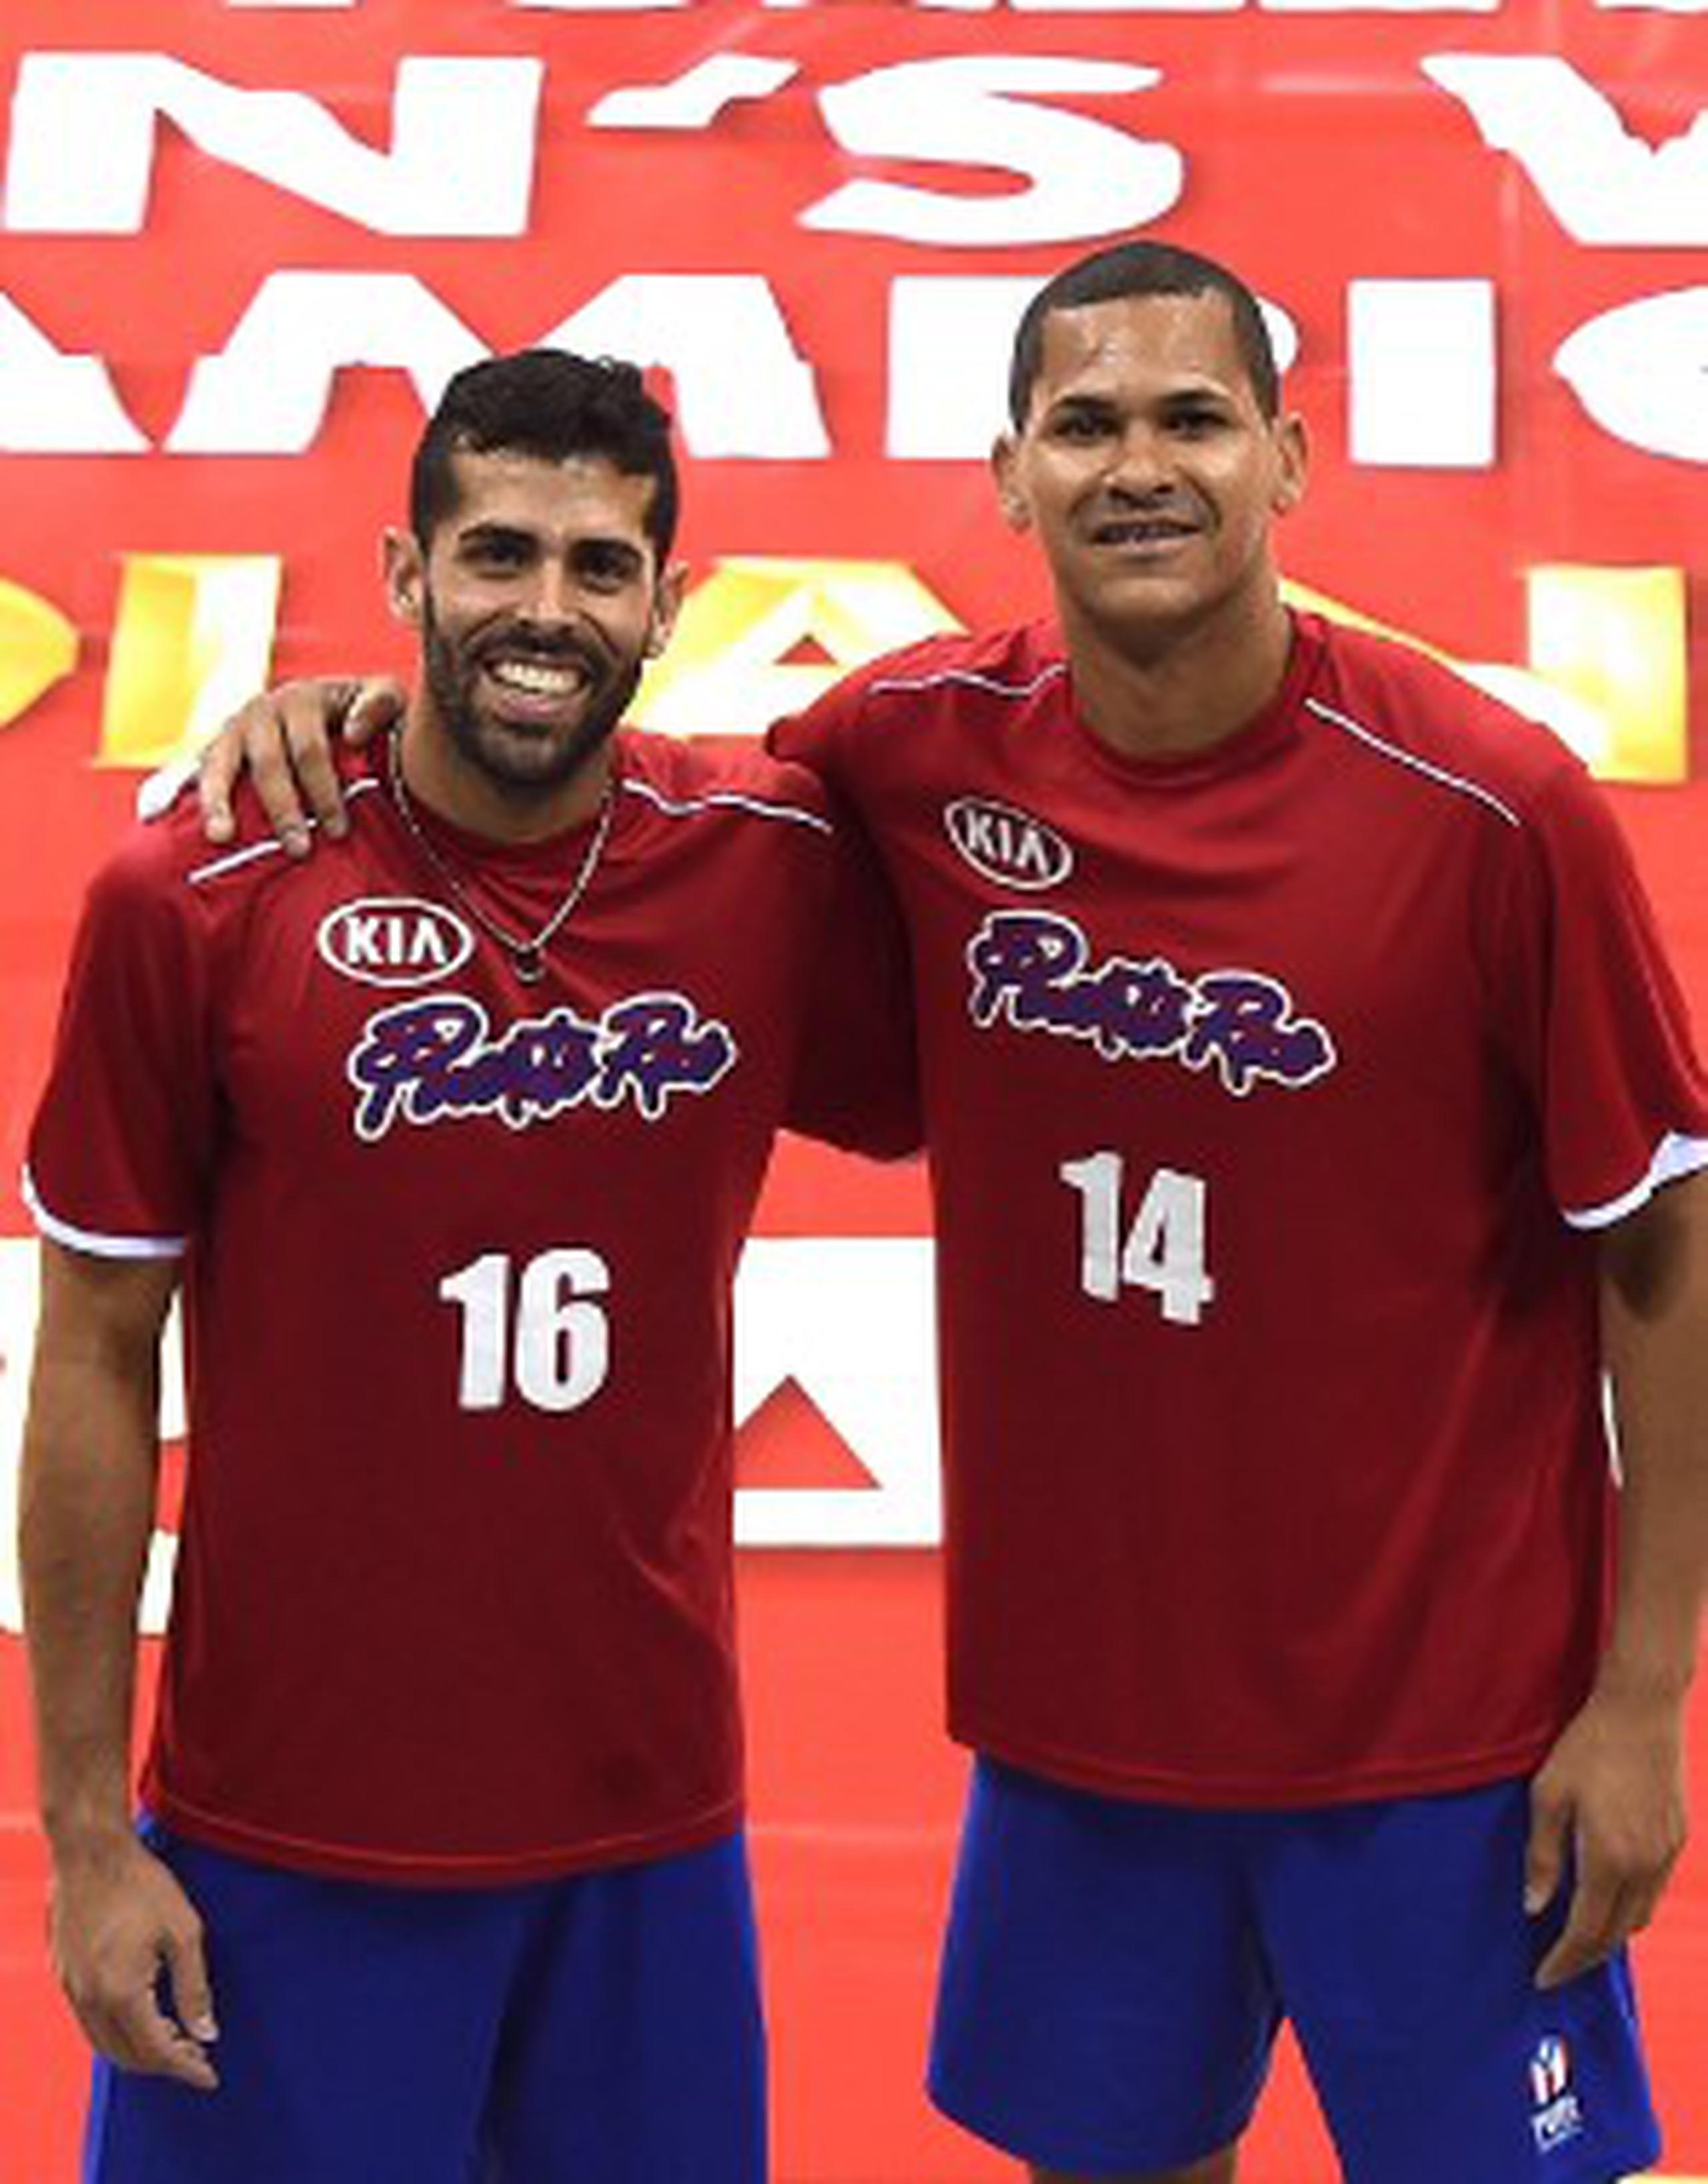 Jackson Rivera y Mannix Román están gozando de la oportunidad de representar a Puerto Rico. (Suministrada)